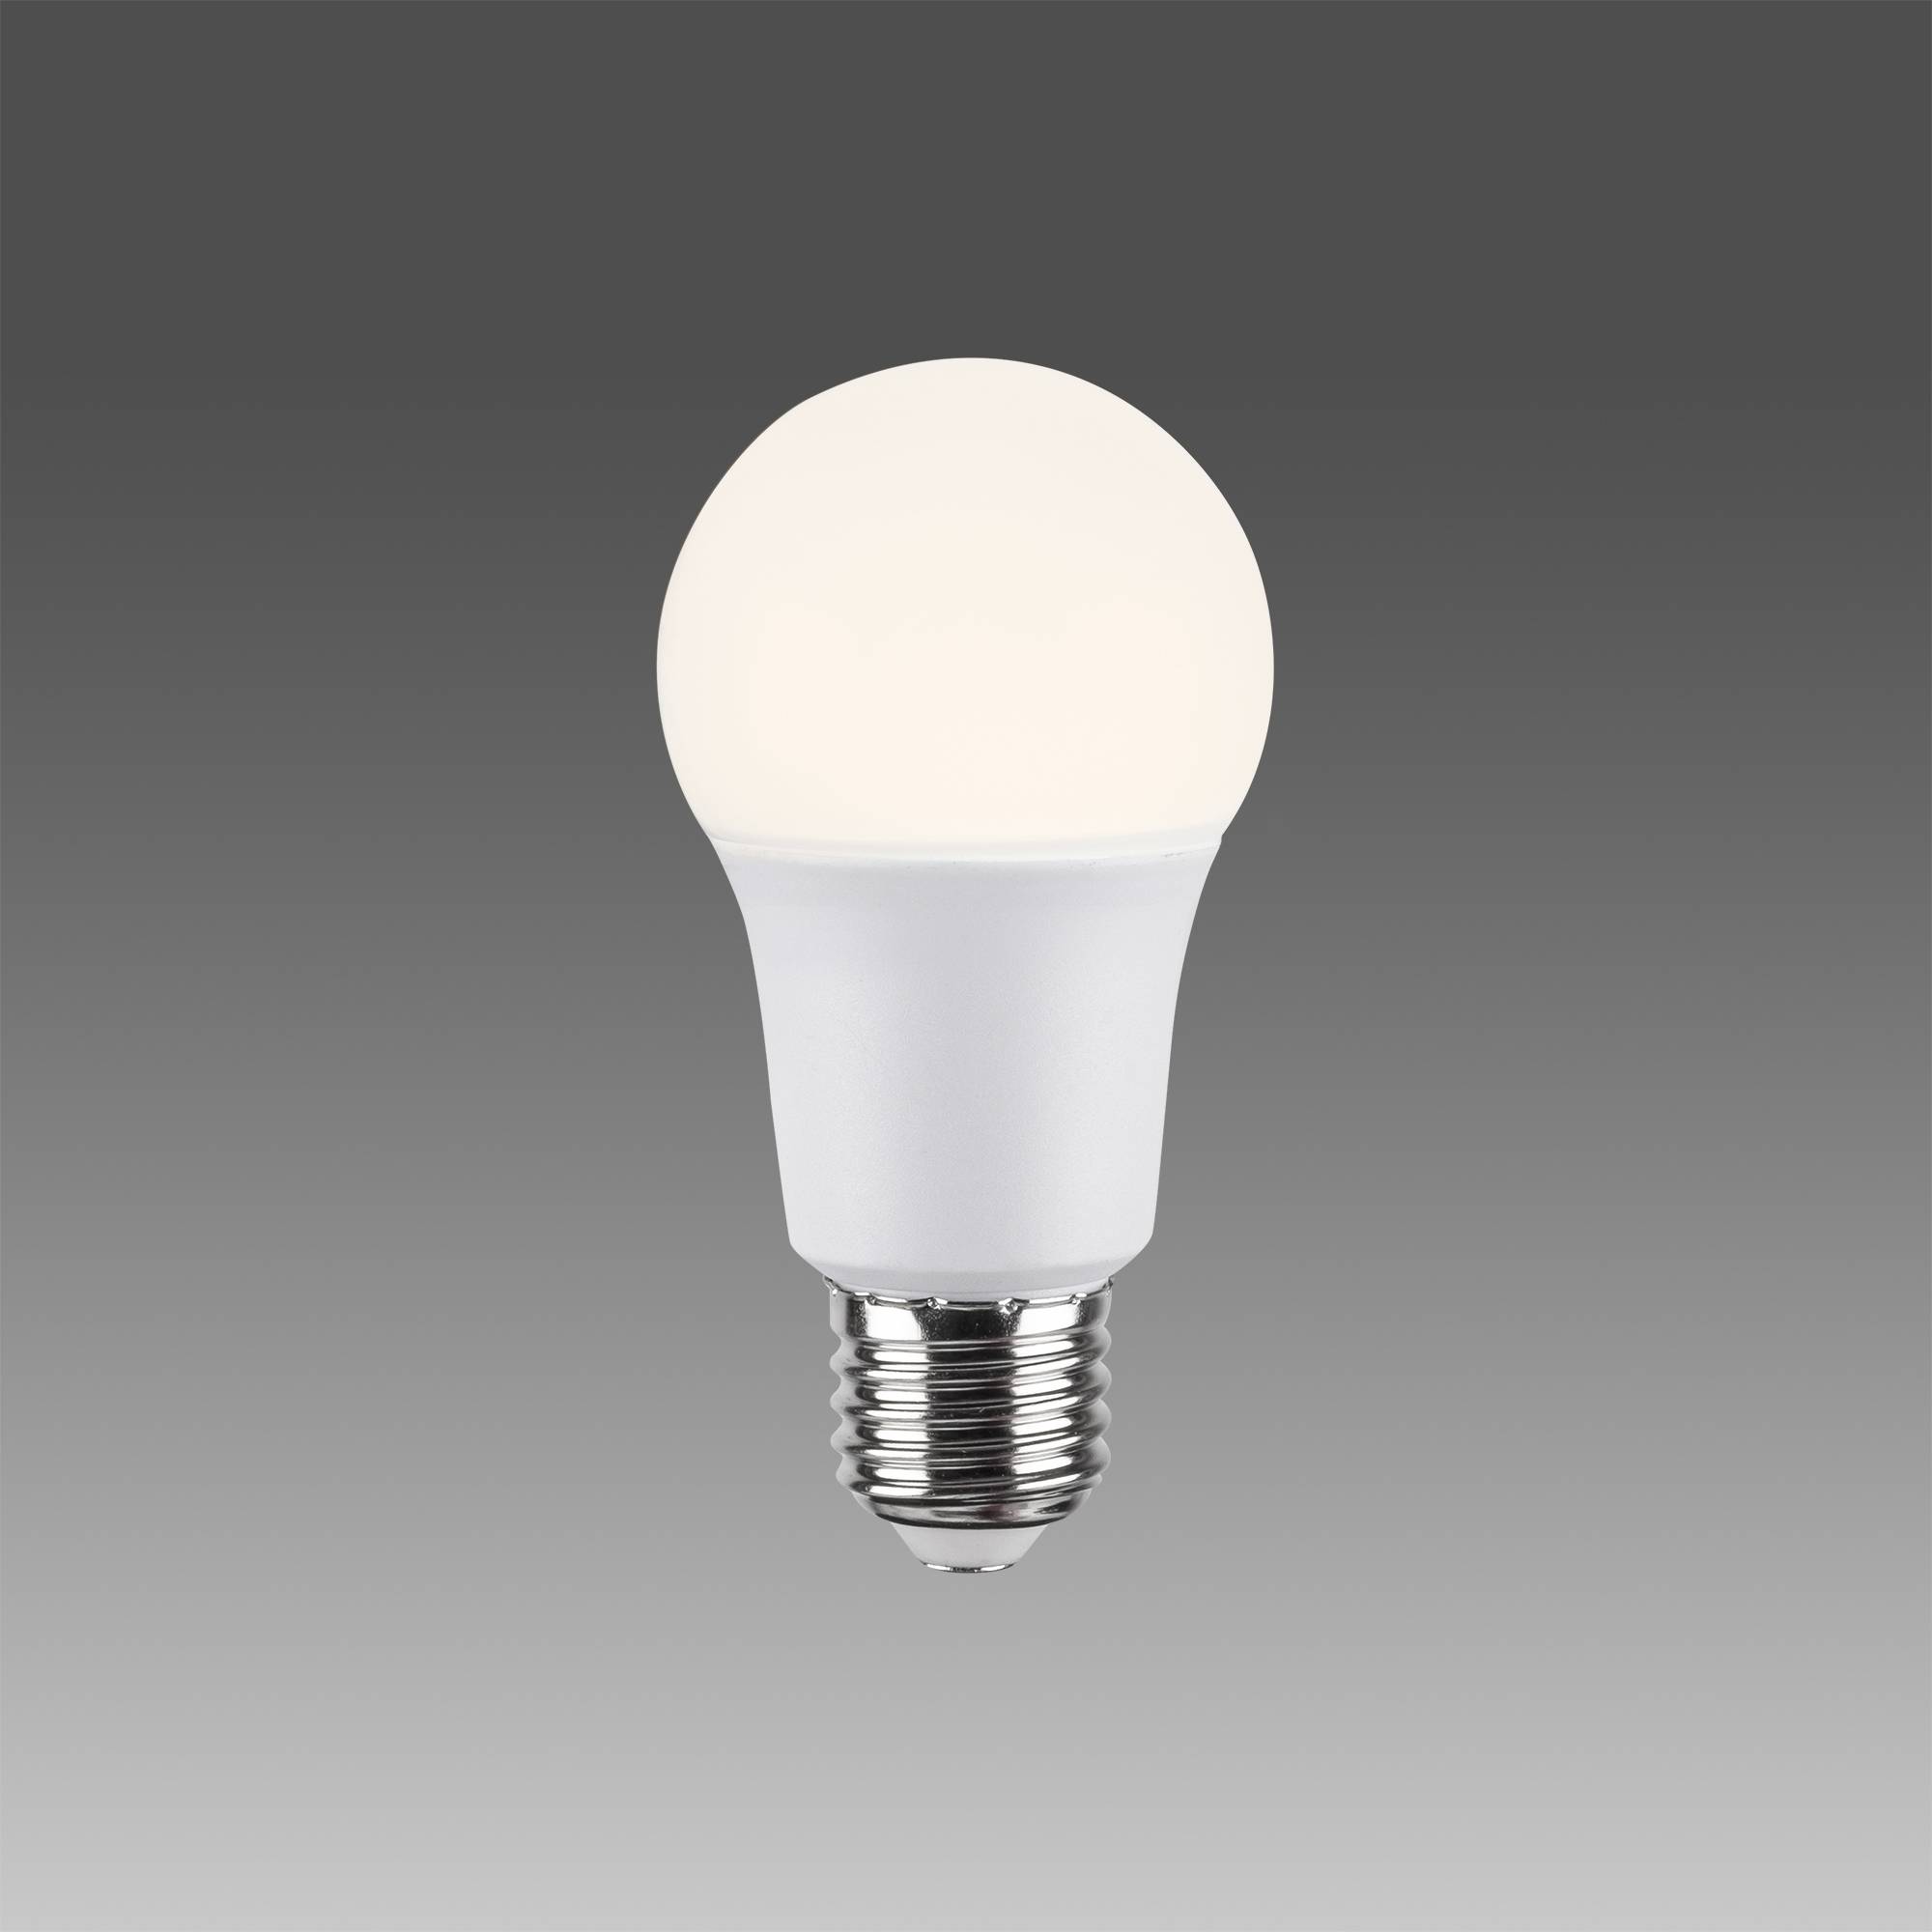 Ampoule LED Claritas 750lm blanc